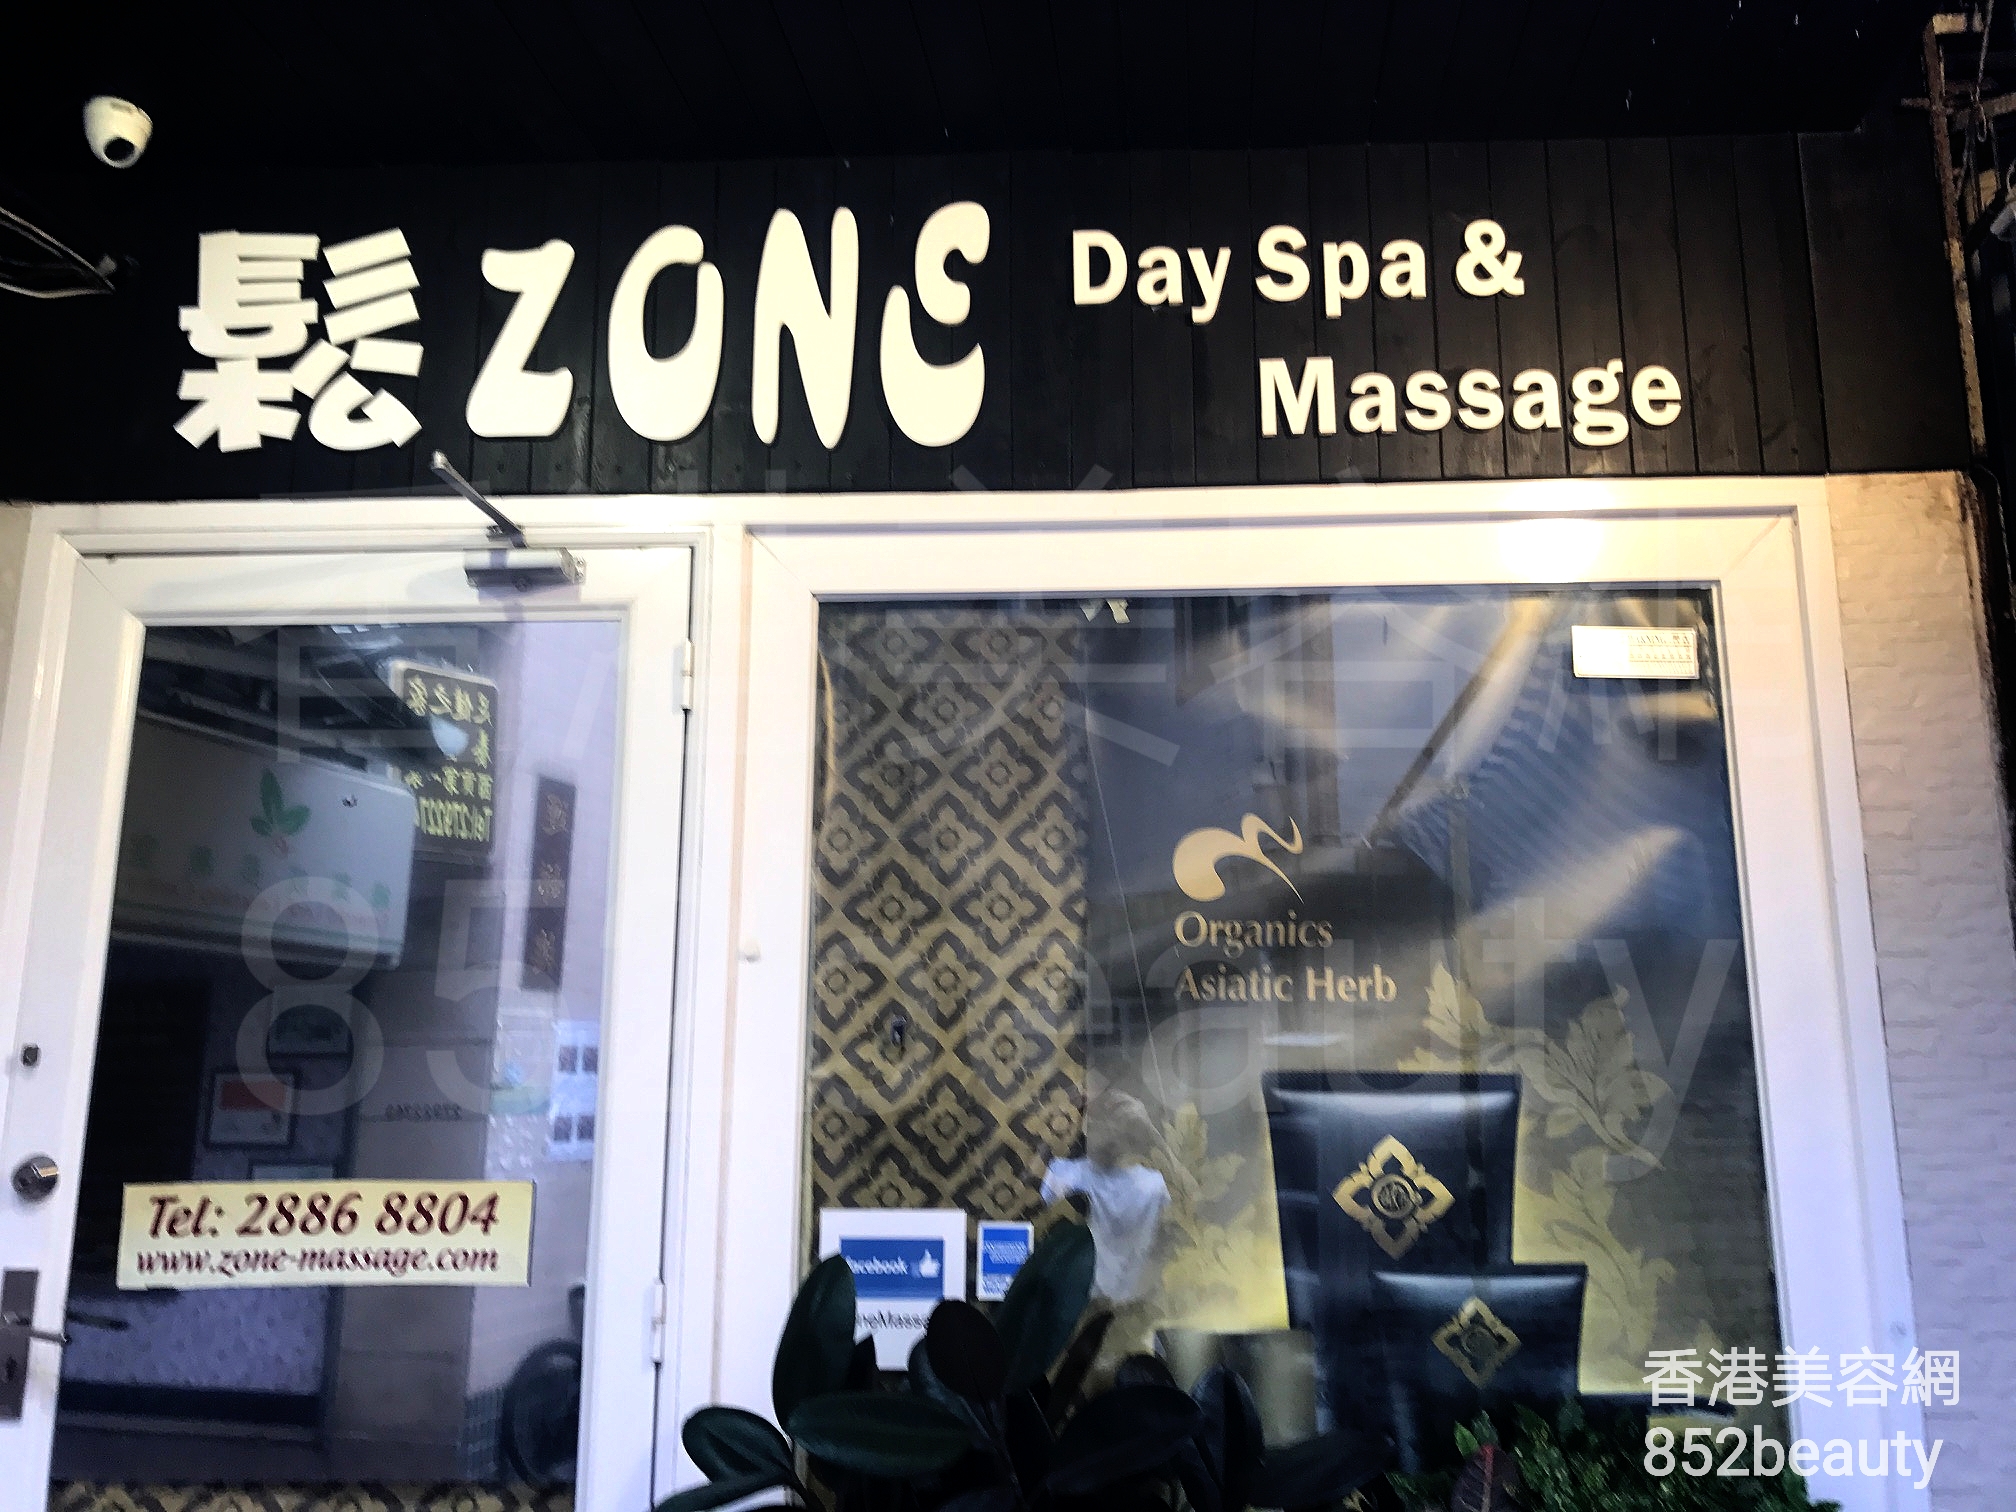 按摩/SPA: 鬆Zone Day Spa & Massage